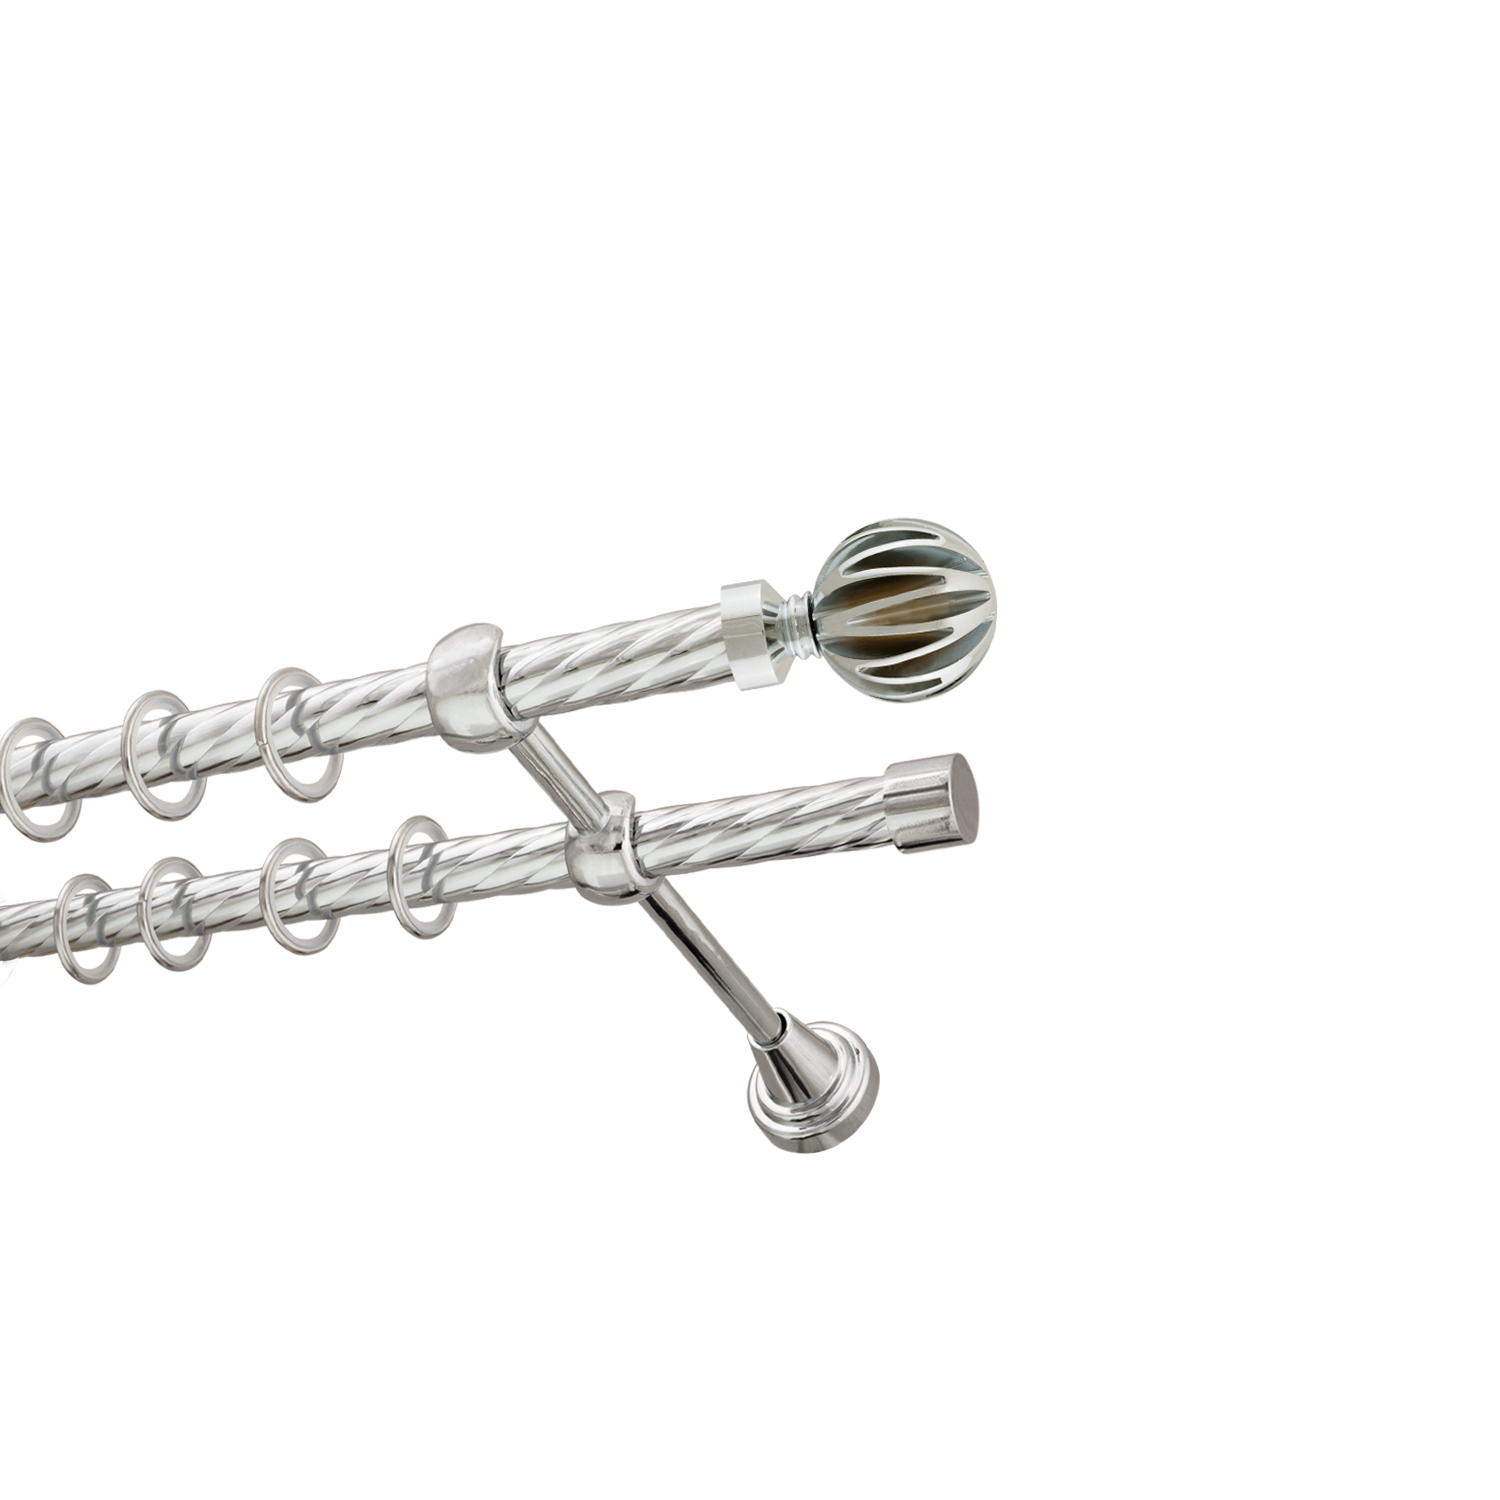 Металлический карниз для штор Шафран, двухрядный 16/16 мм, серебро, витая штанга, длина 160 см